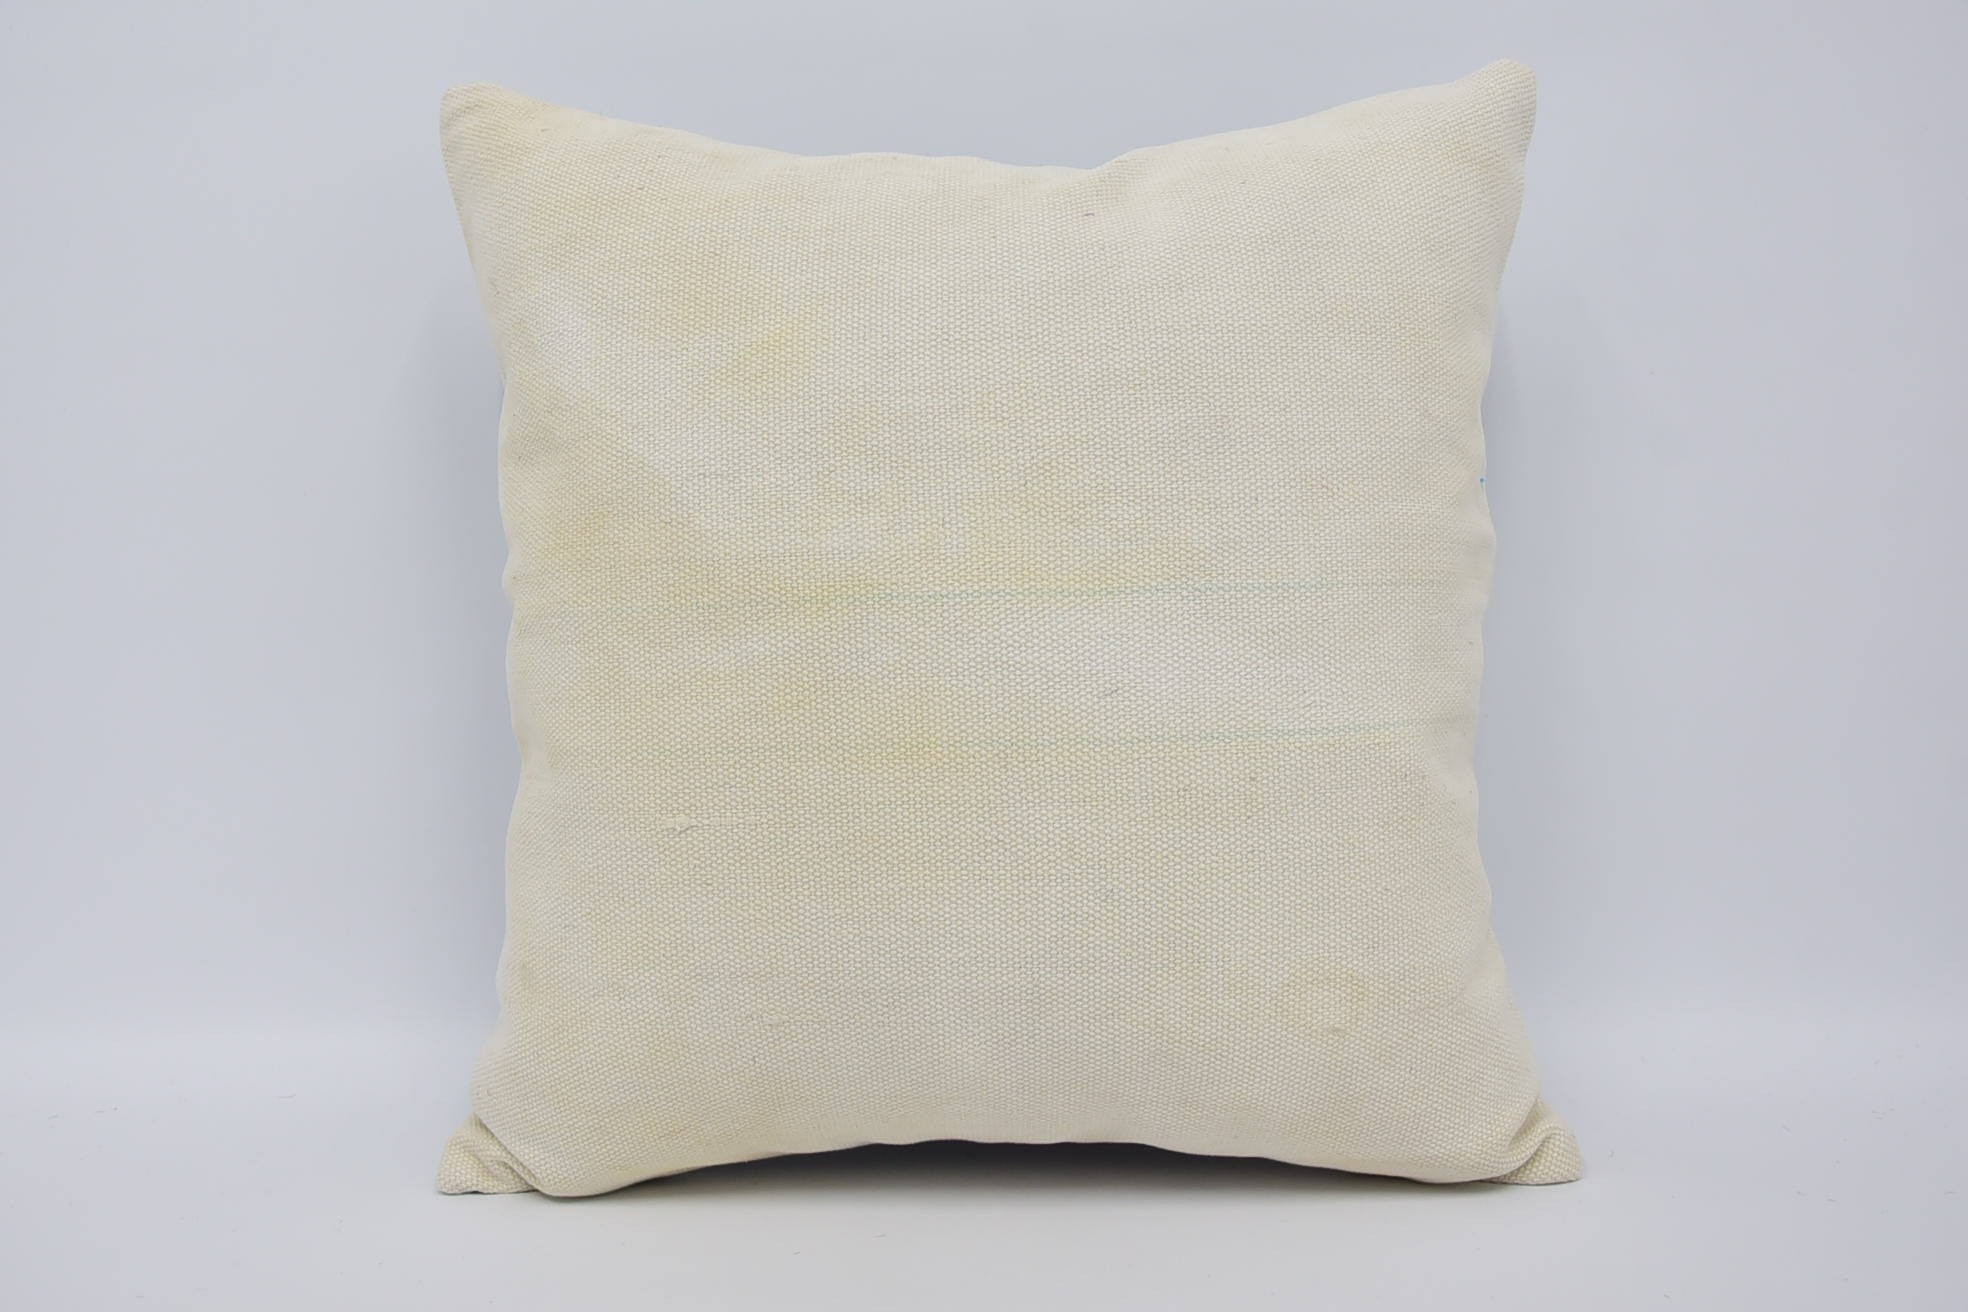 Ethnic Pillow Case, Vintage Kilim Pillow, 18"x18" Beige Pillow Sham, Vintage Cushion Cover, Vintage Pillow, Boho Pillow